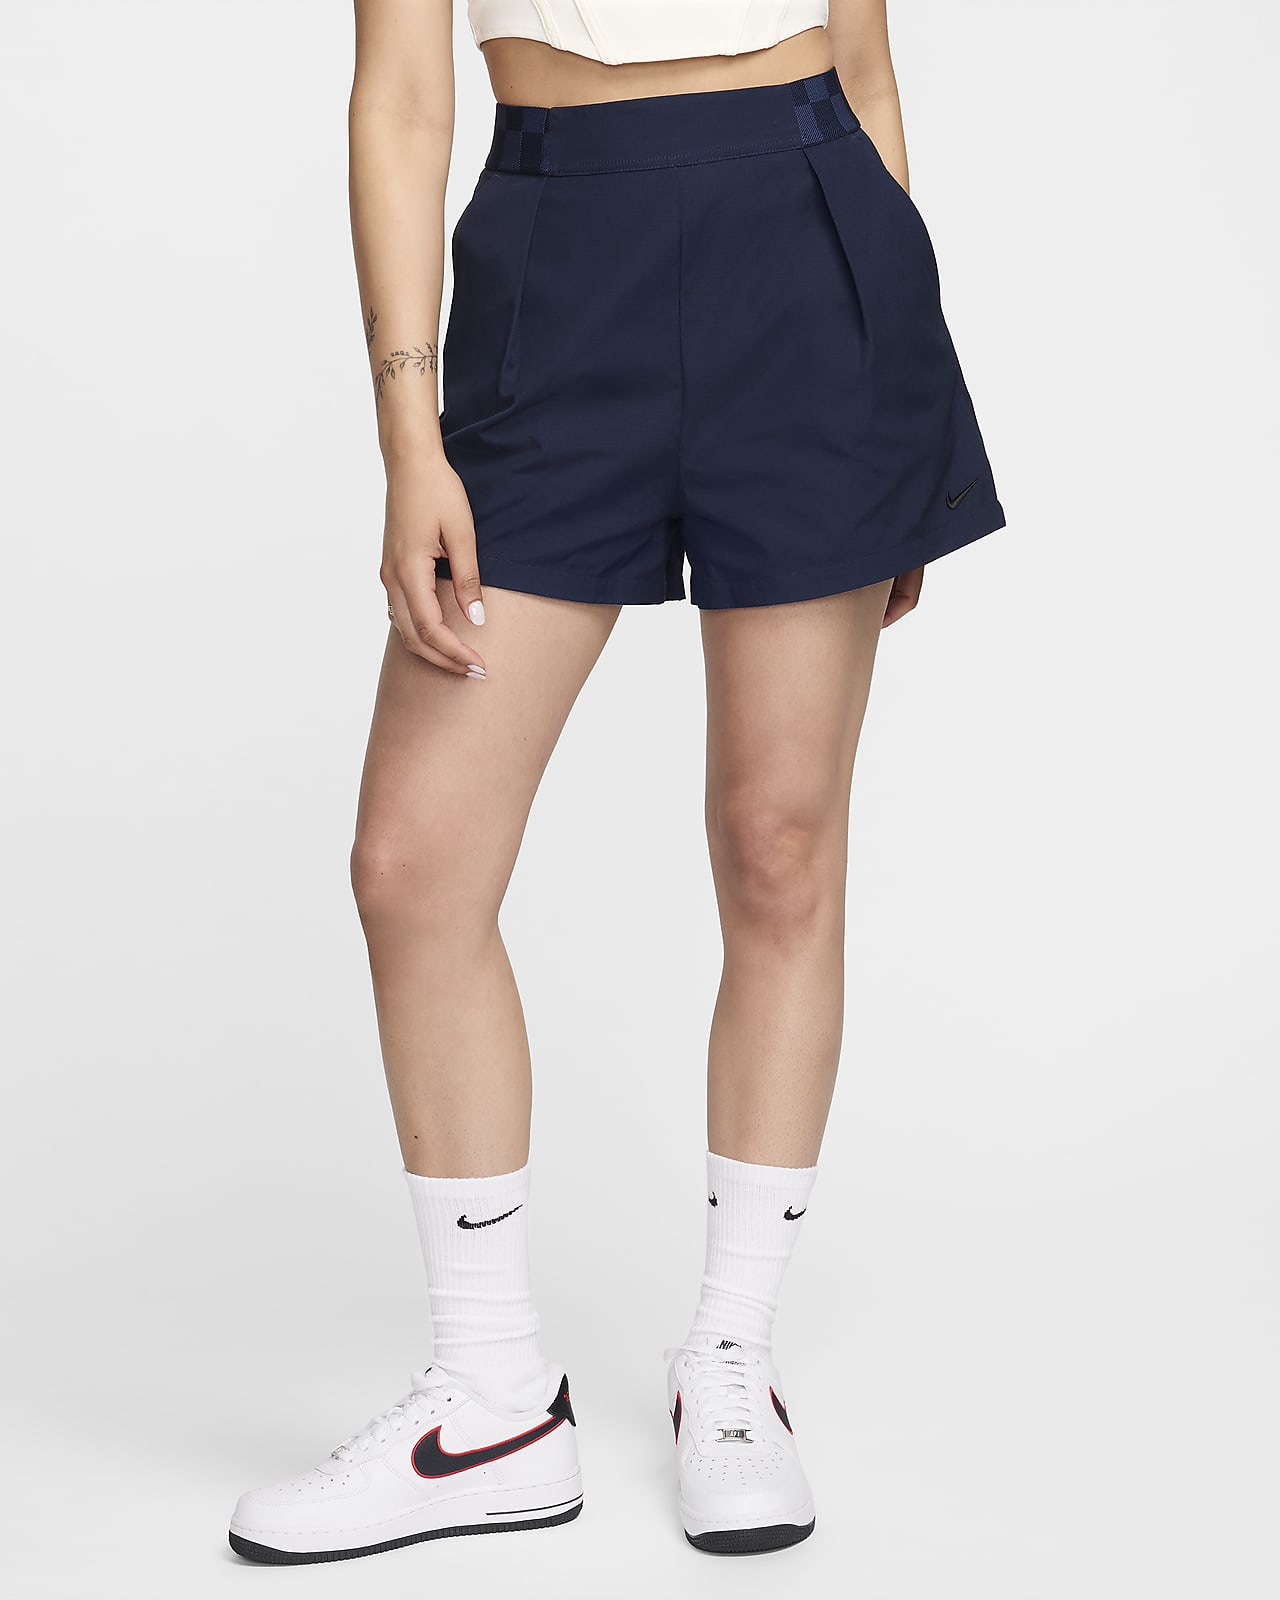 Γυναικείο ψηλόμεσο σορτς σε στιλ παντελονιού Nike Sportswear Collection 8 cm